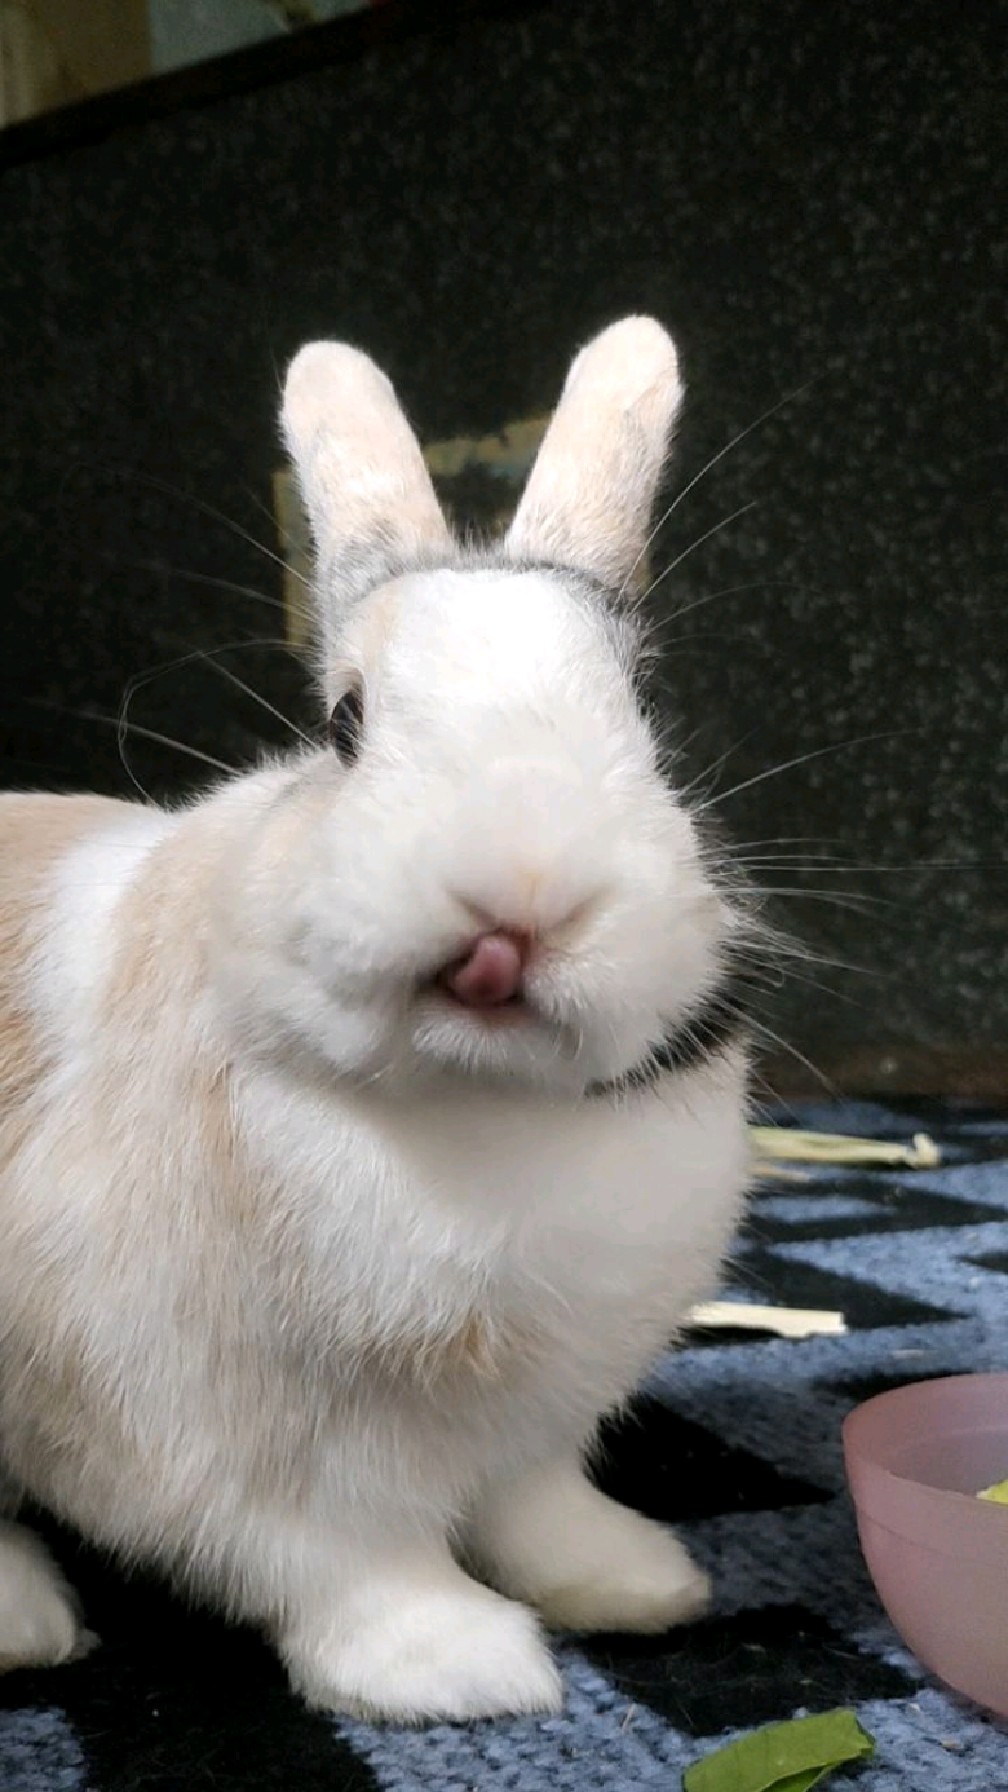 嘴巴的小兔子真是太可爱了截一个稍微清晰一点的屏不容易主人已舔屏